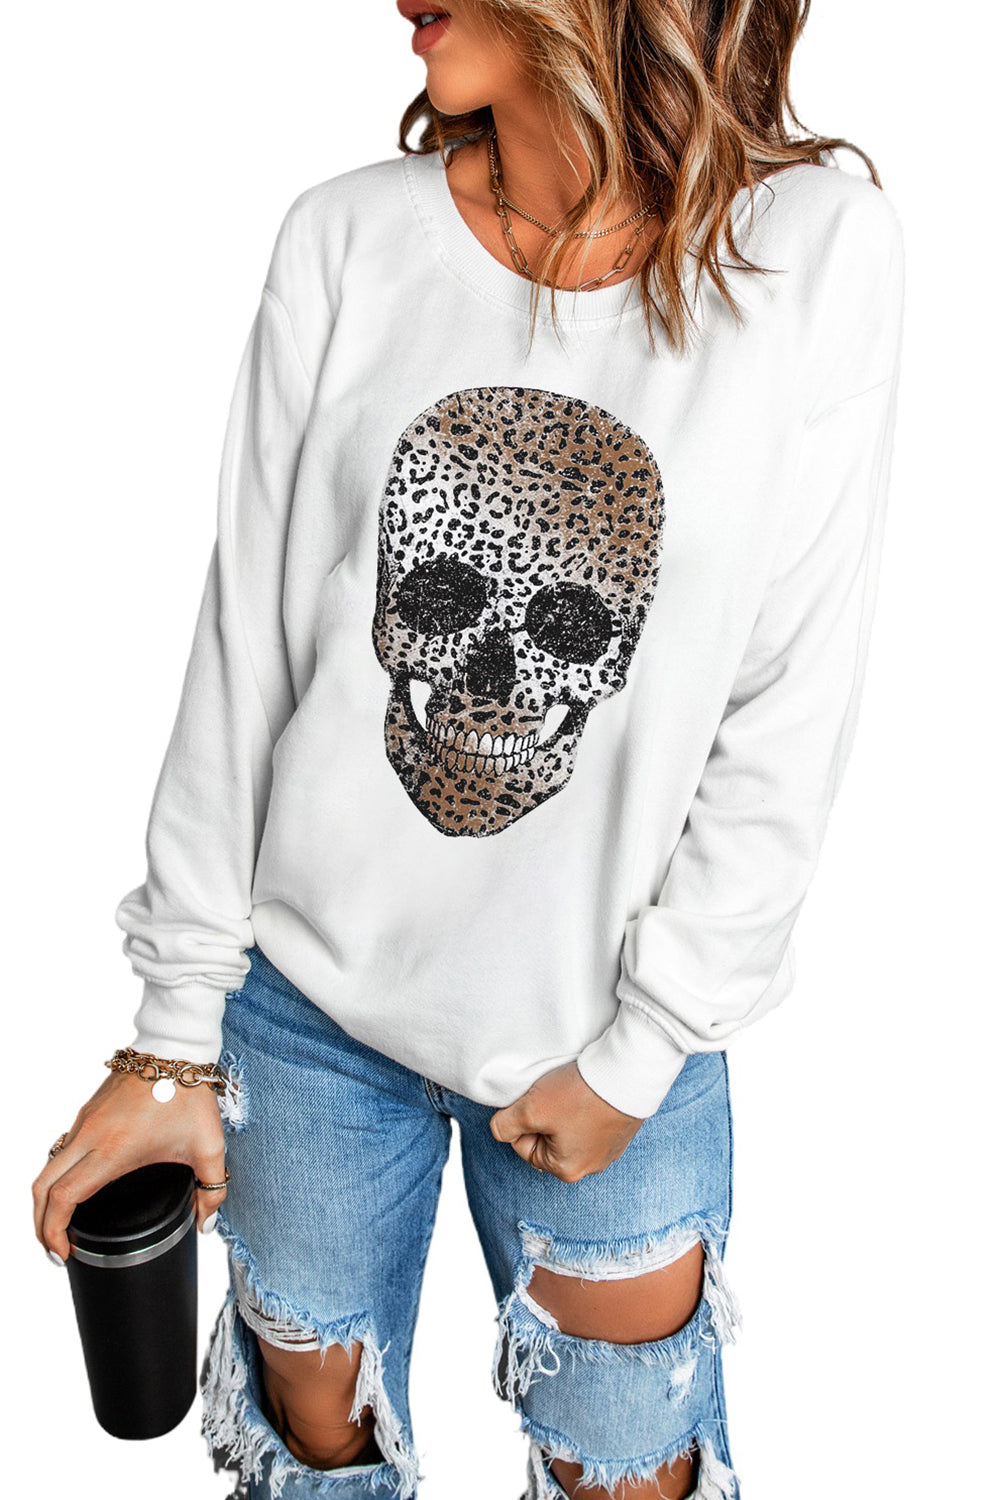 White Leopard Skull Print Crew Neck Graphic Sweatshirt Graphic Sweatshirts JT's Designer Fashion